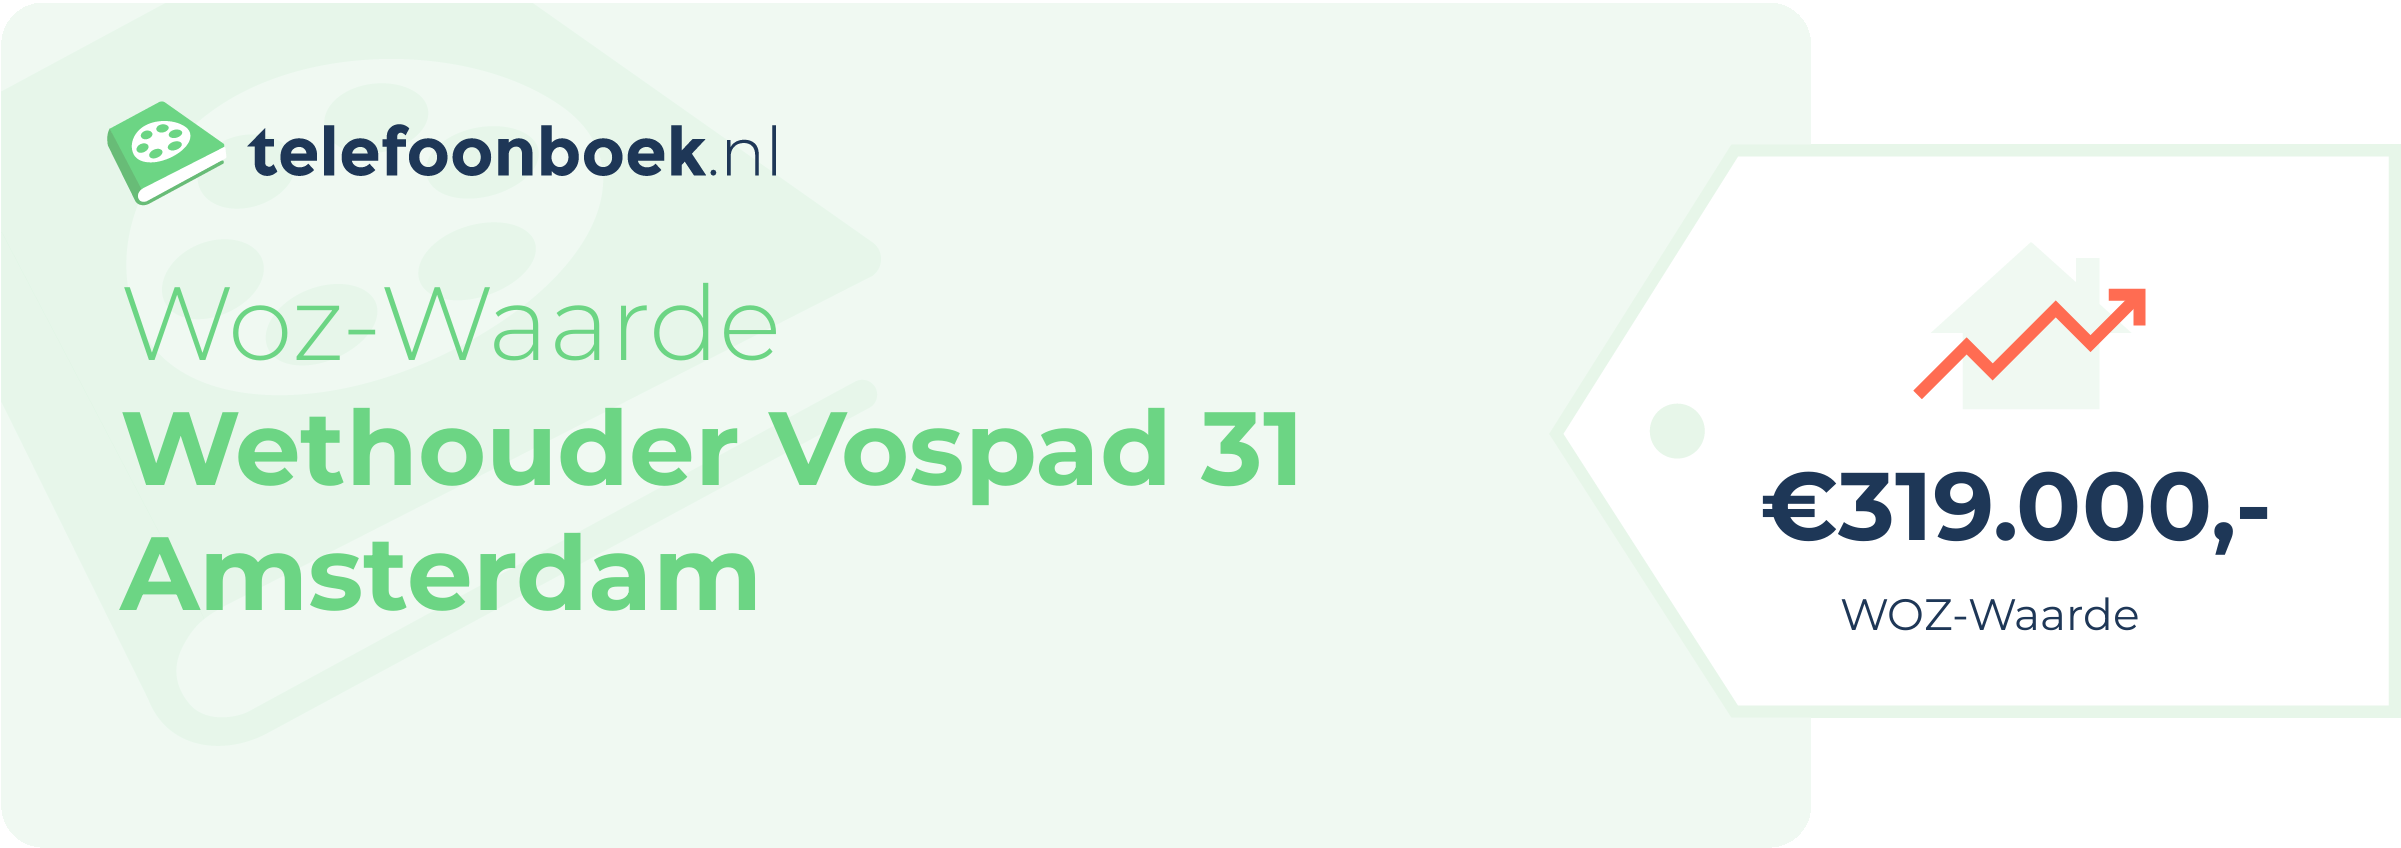 WOZ-waarde Wethouder Vospad 31 Amsterdam